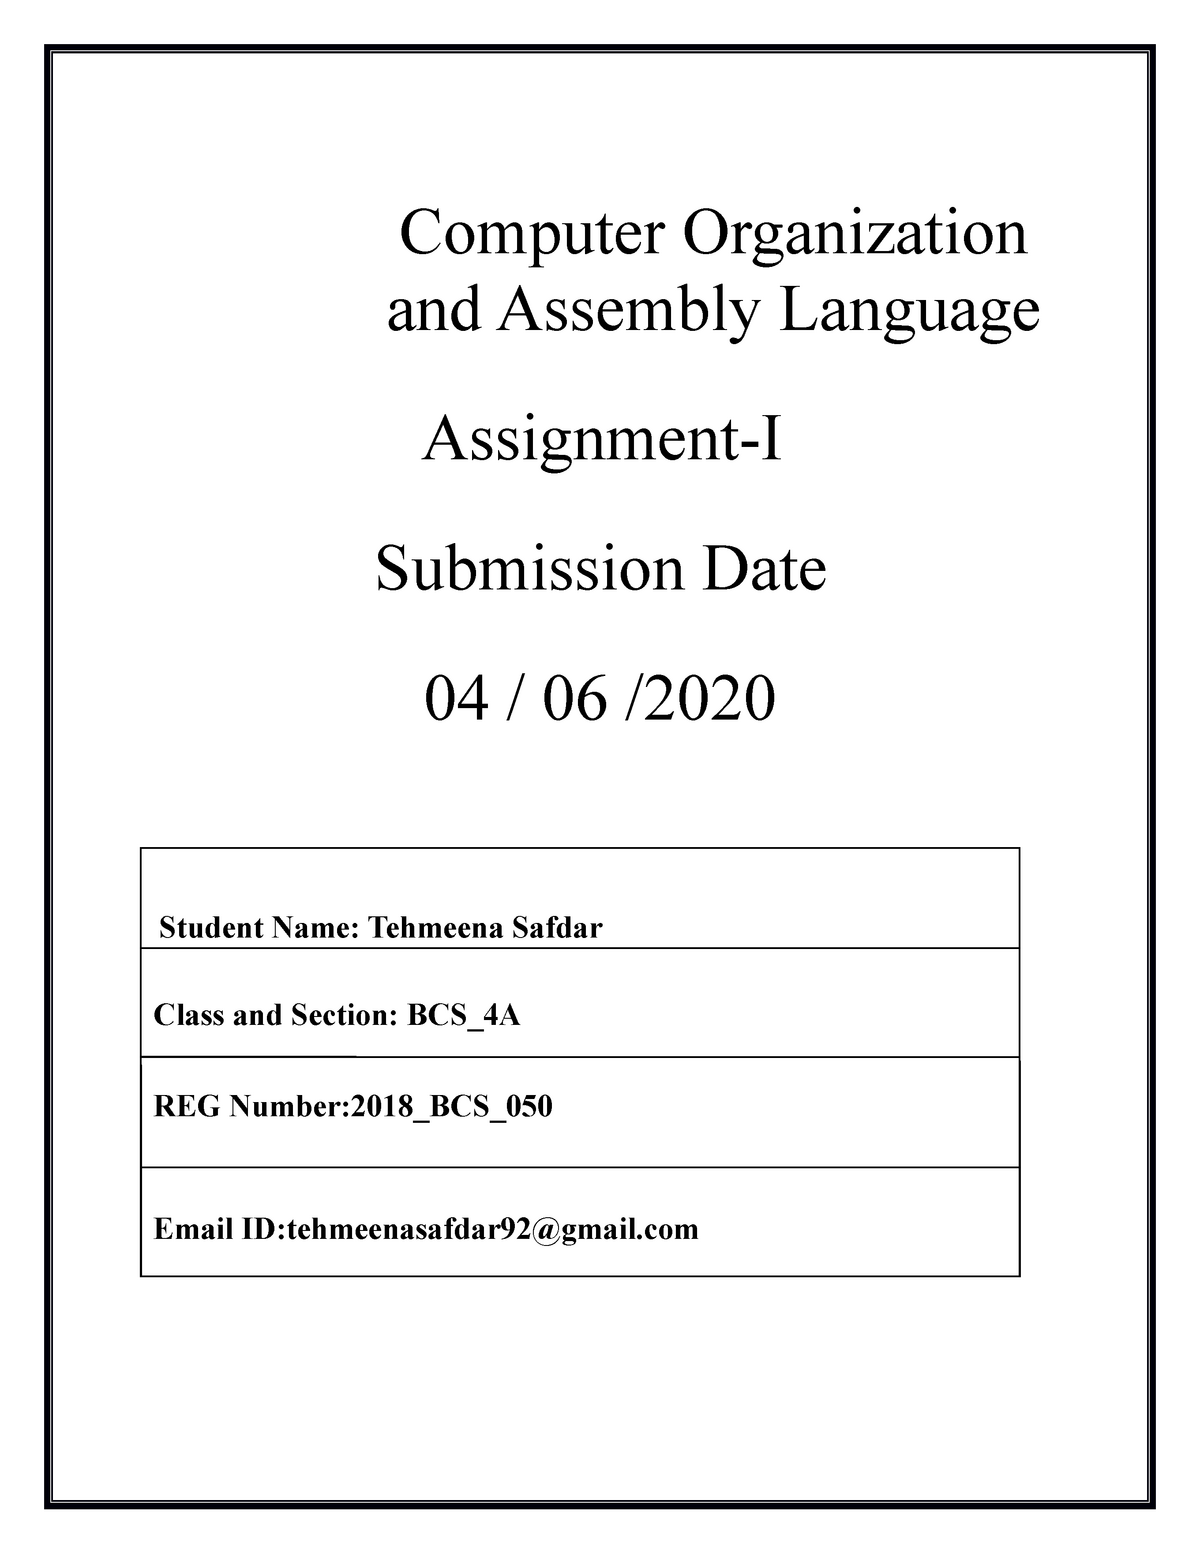 computer per assignment